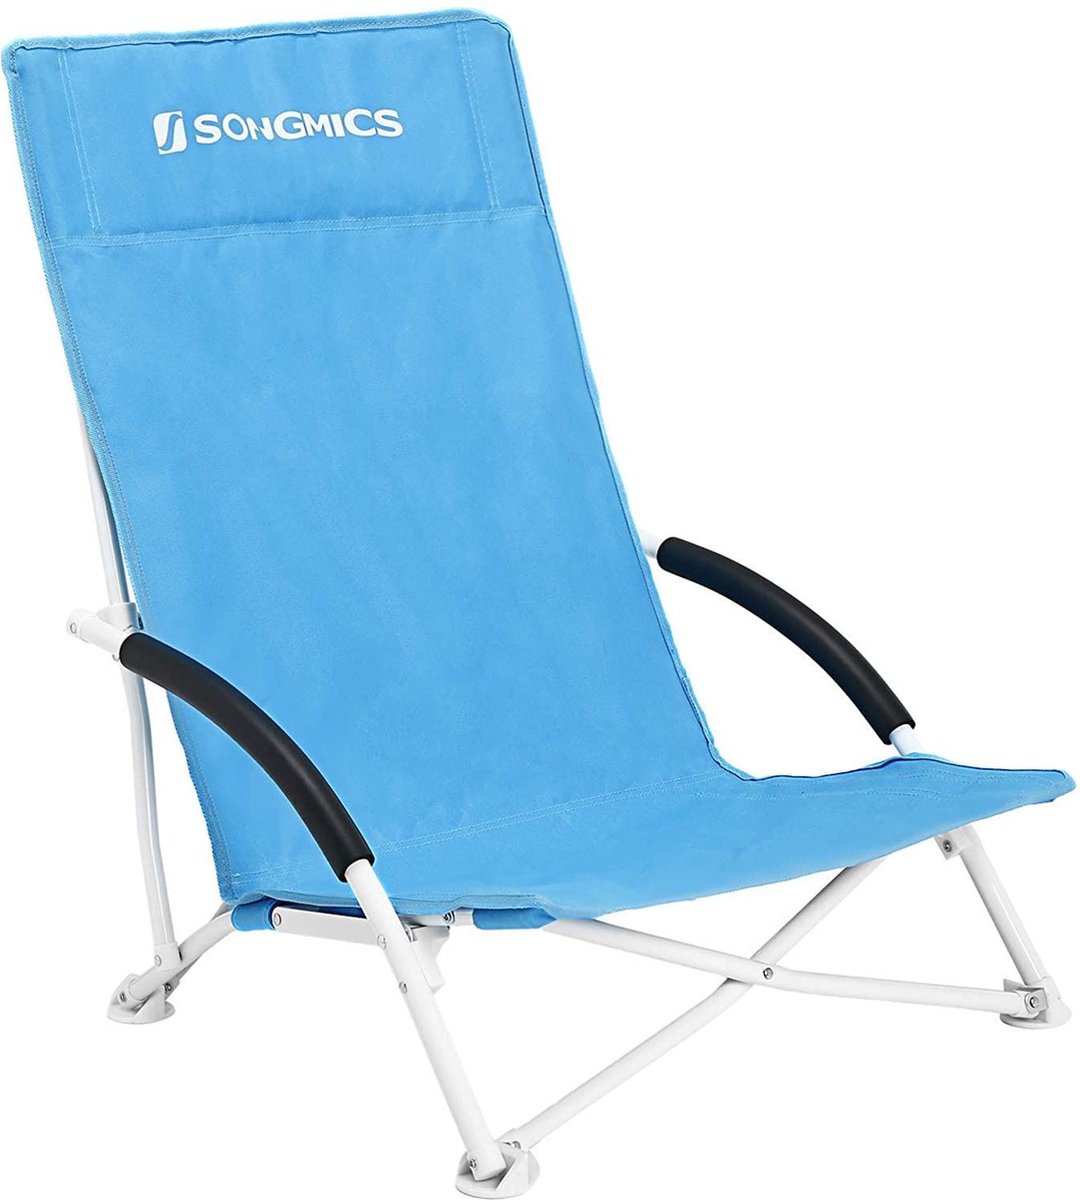 SONGMICS Strandstoel met hoge rugleuning, draagbare klapstoel, inklapbare campingstoel, opvouwbaar, licht, comfortabel en zeer belastbaar, outdoorstoel met draagtas, lichtblauw GCB61BU